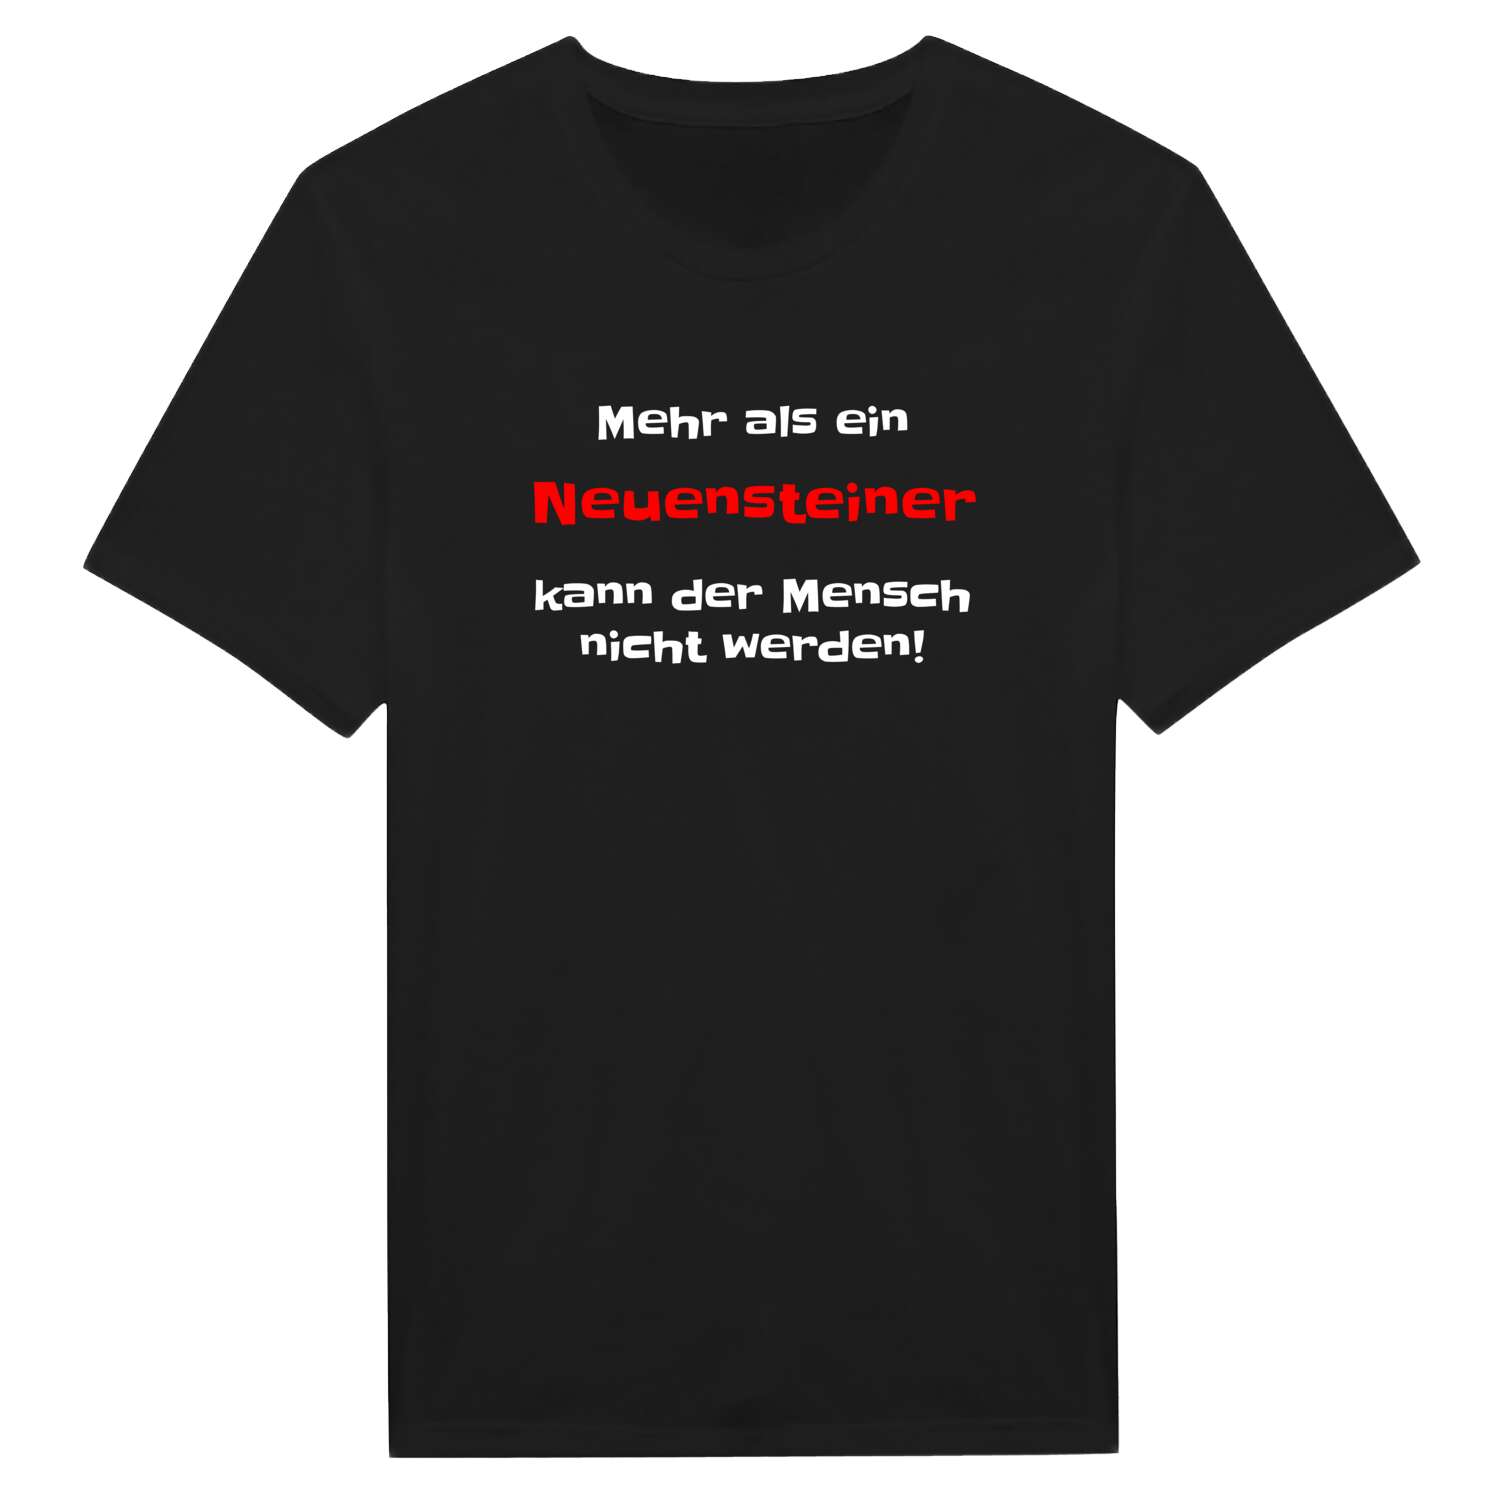 Neuenstein T-Shirt »Mehr als ein«